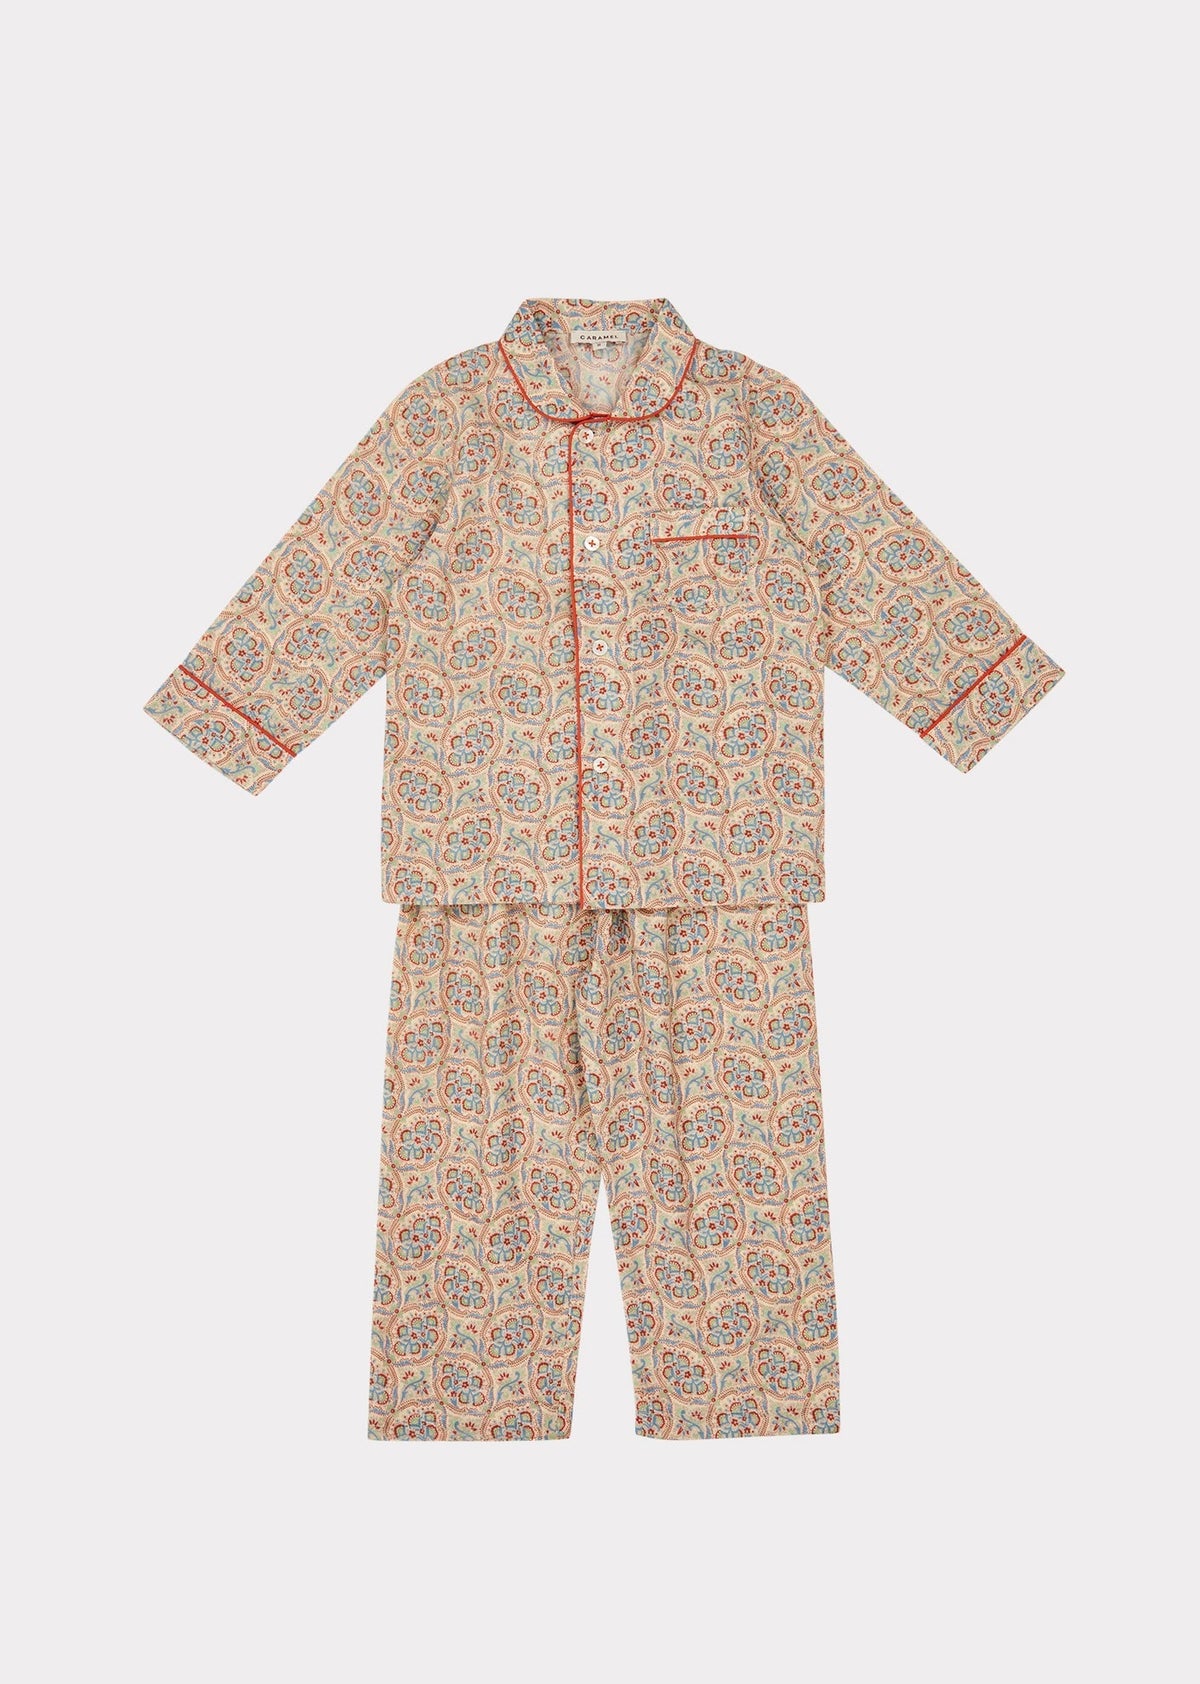 Child Pyjamas, Paisley Print